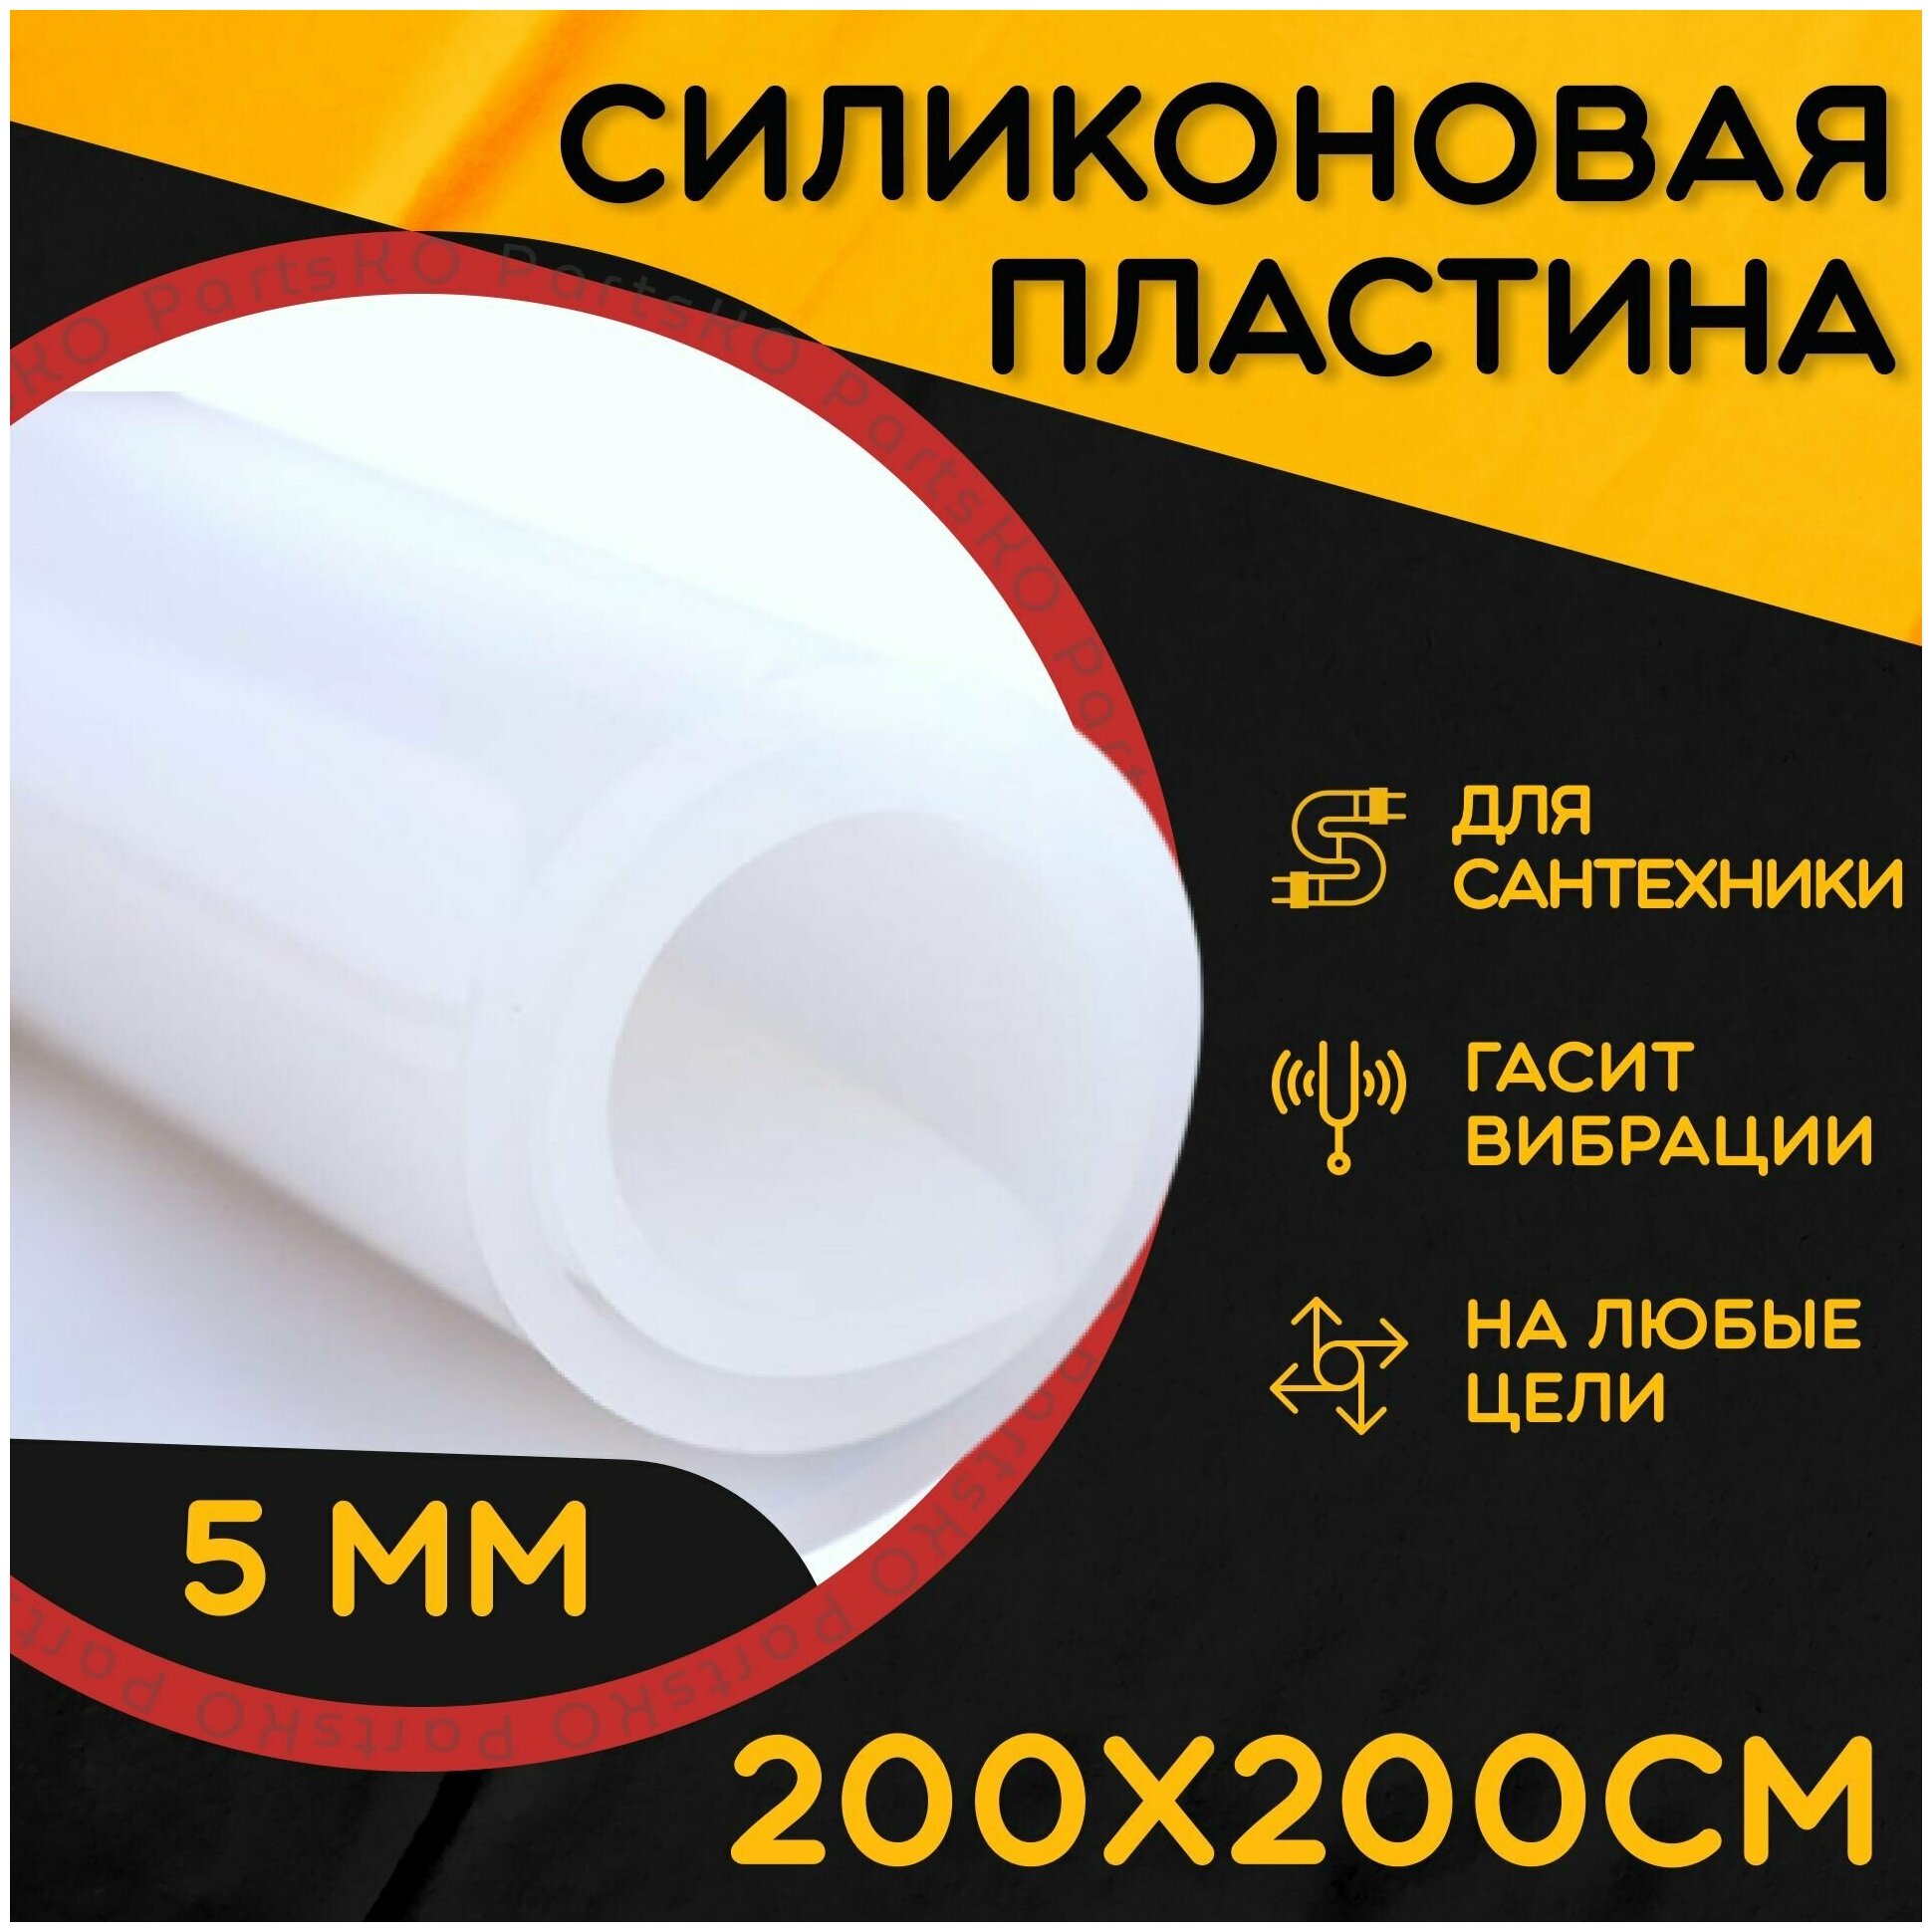 Силиконовая резина термостойкая. Толщина 5 мм. Размер 200х200 мм / Уплотнительная прокладка / Силиконовая пластина белого цвета.